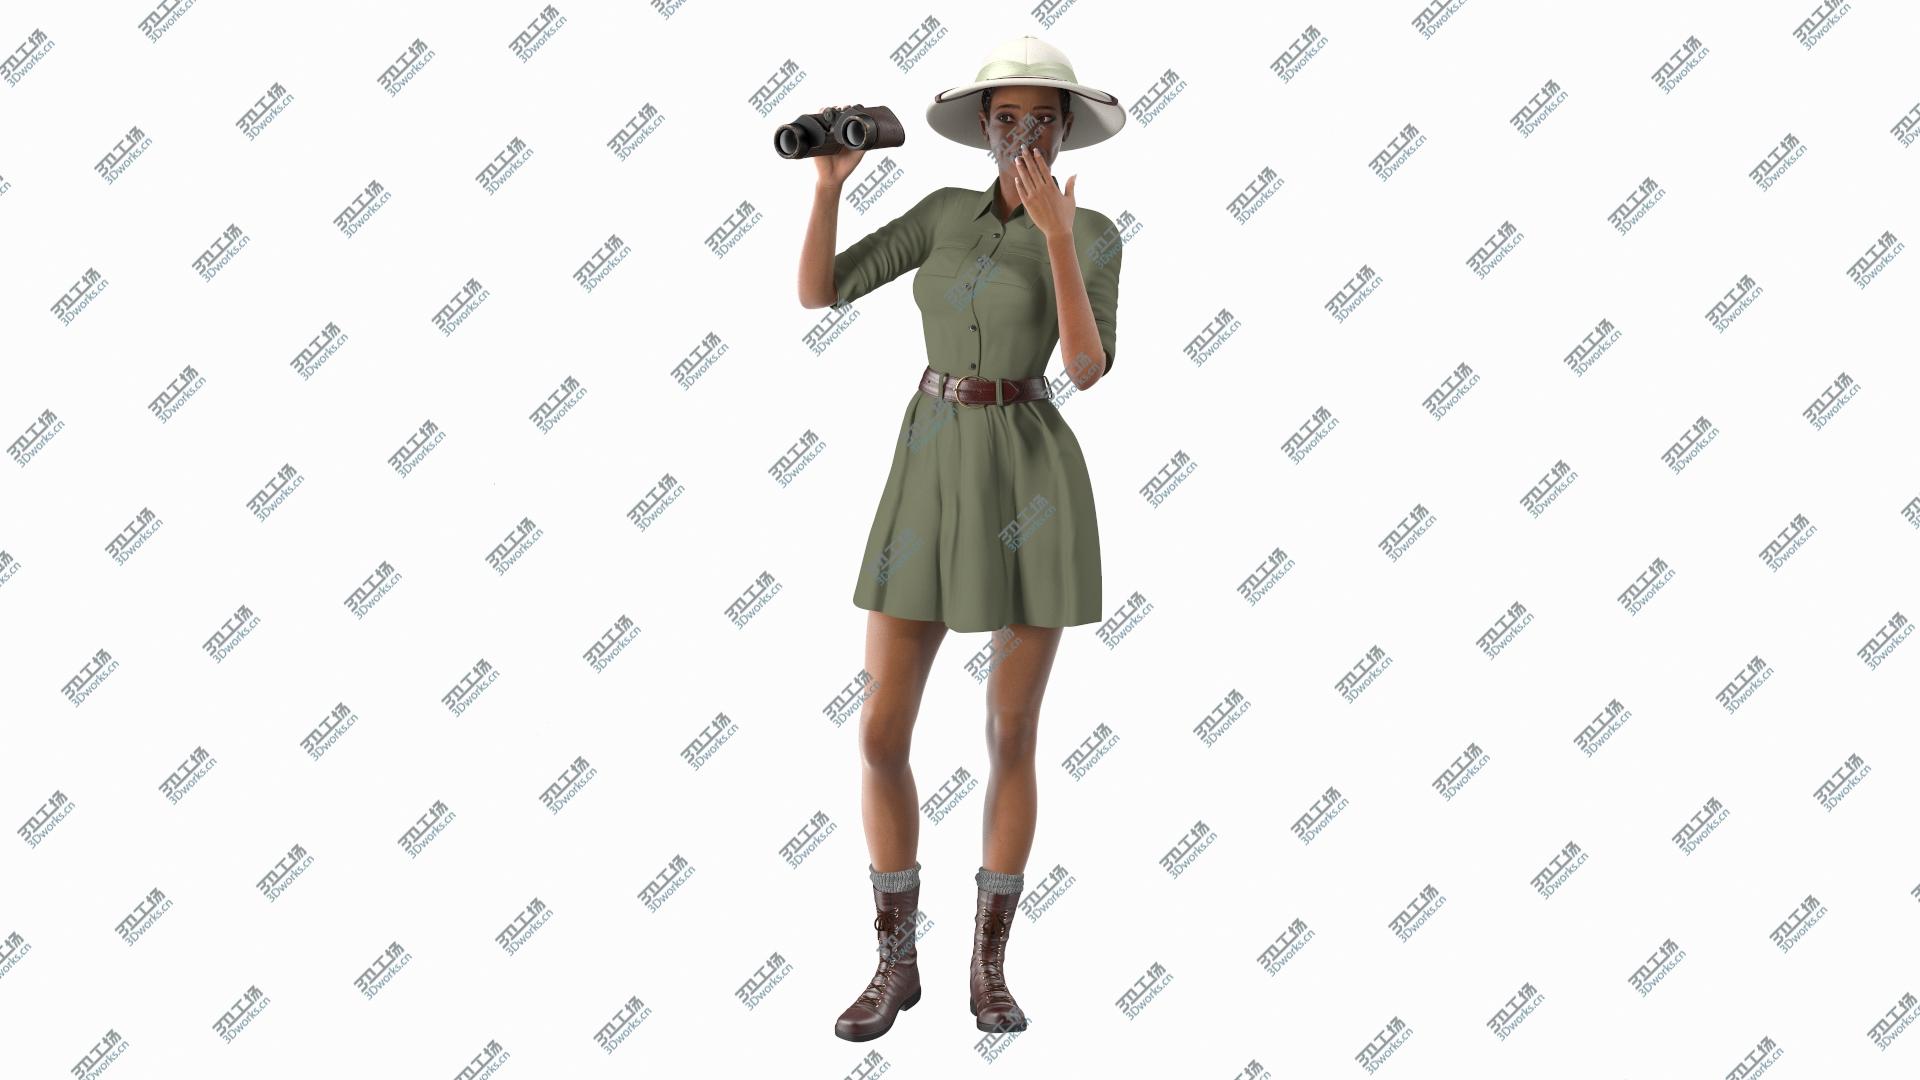 images/goods_img/202104093/Light Skin Black Woman Explorer 3D/3.jpg